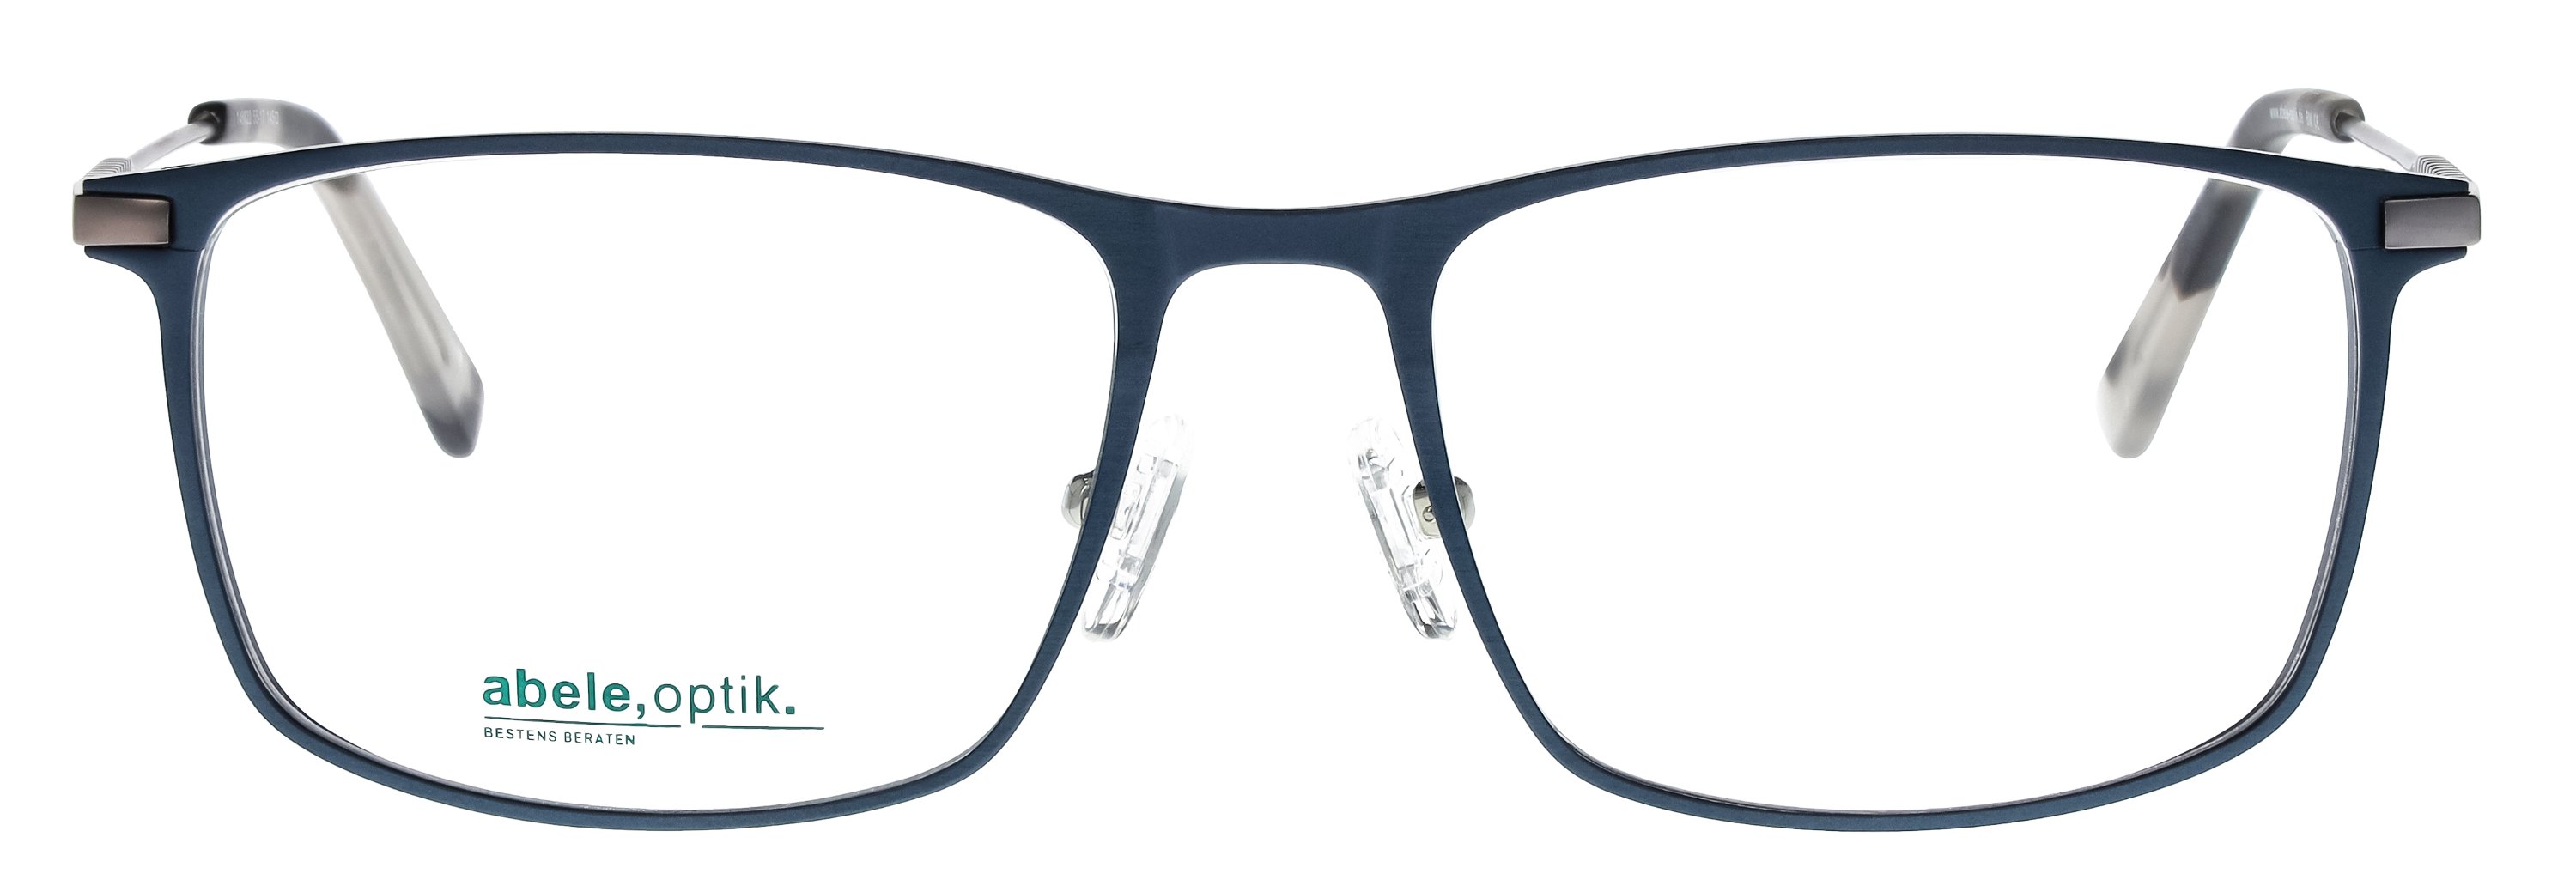 Das Bild zeigt die Korrektionsbrille 146622 von der Marke Abele Optik in blau matt.